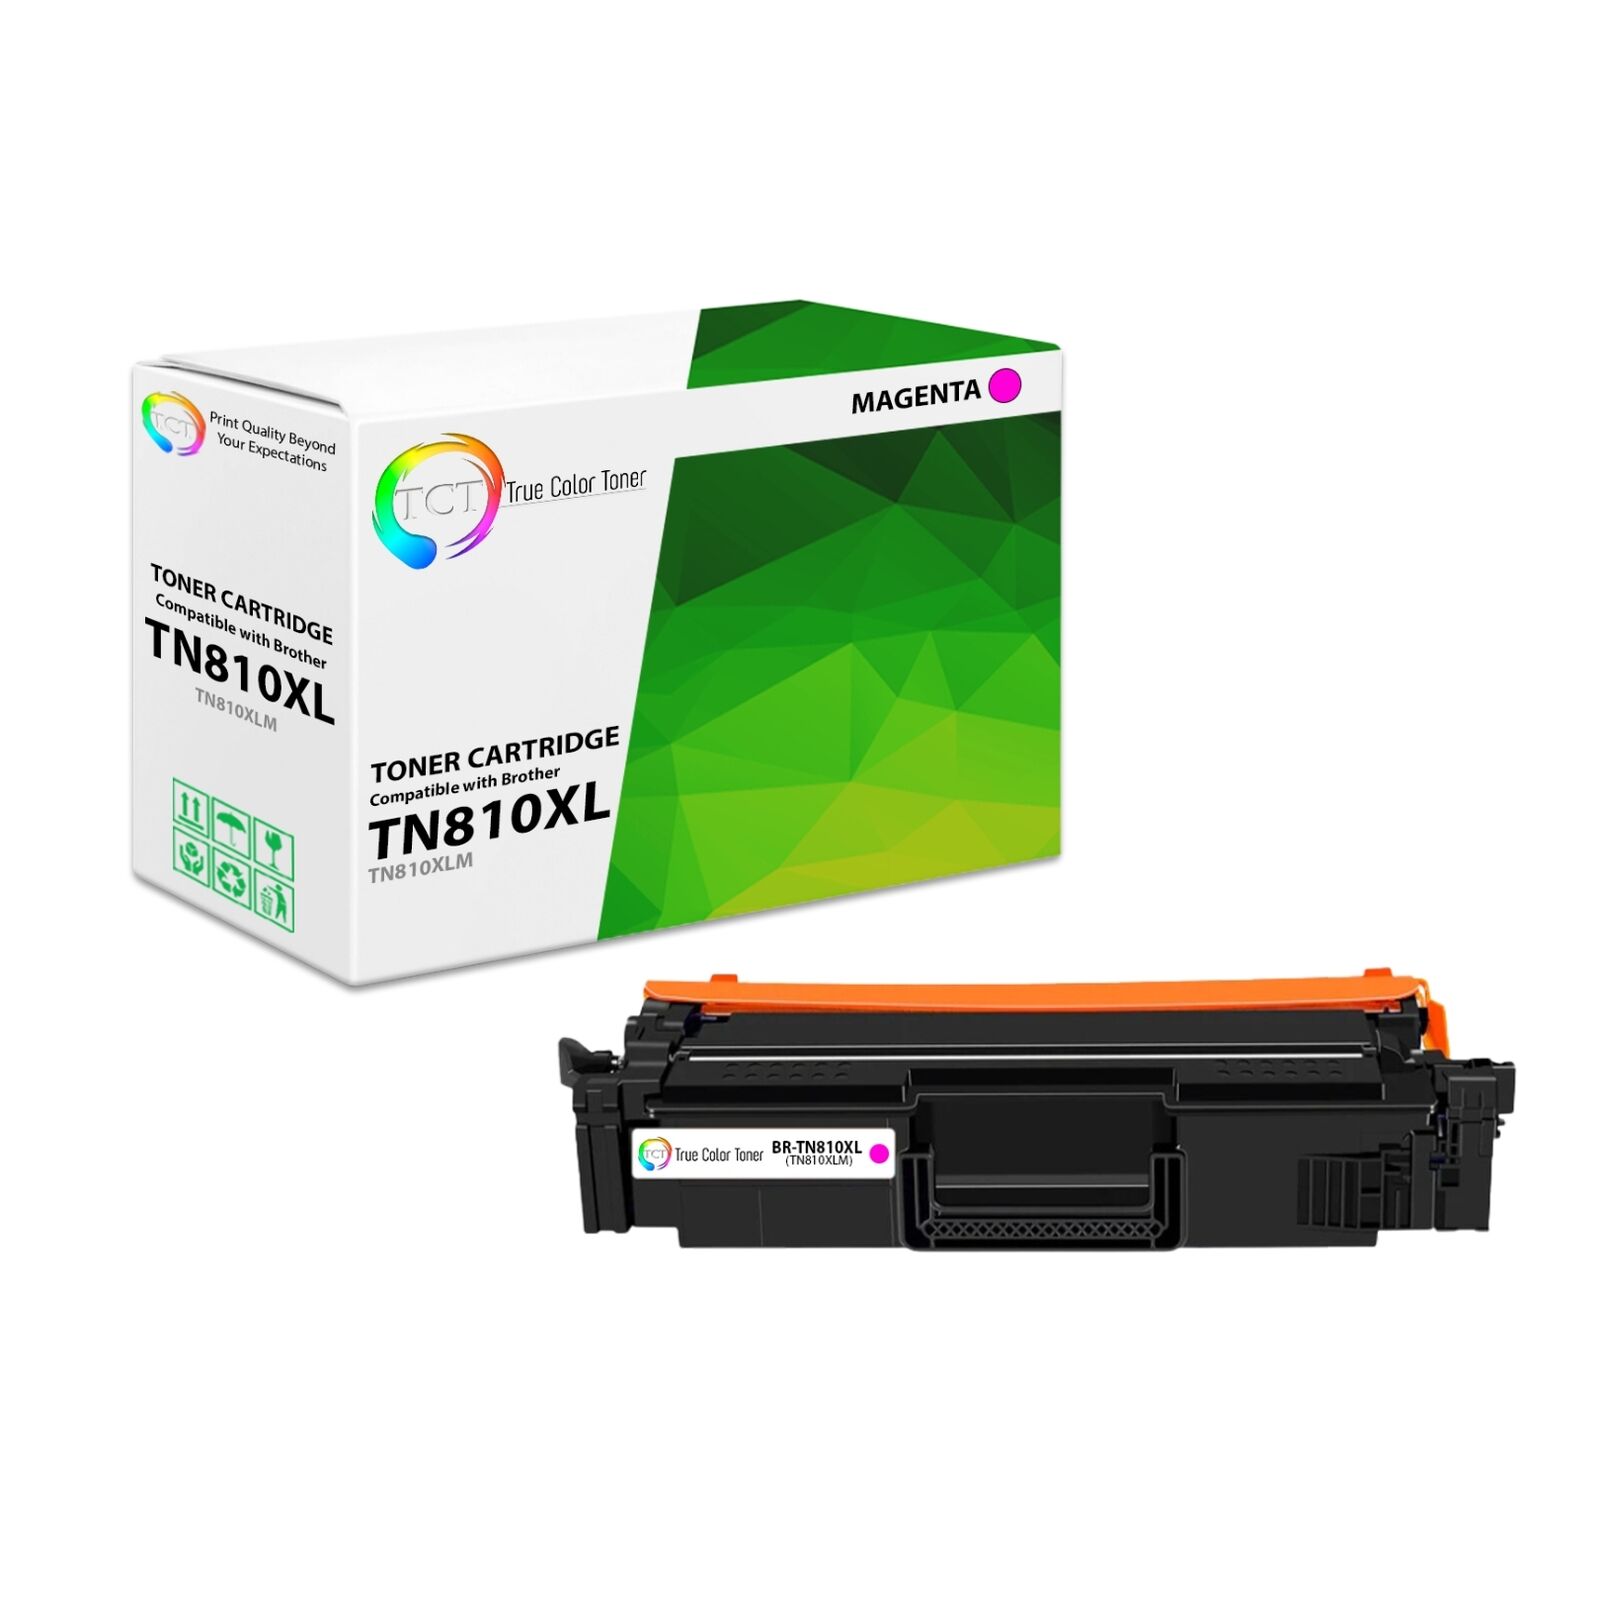 TCT Premium TN-810 Magenta for Compatible Brother HL-L9410CDN Toner Cartridge